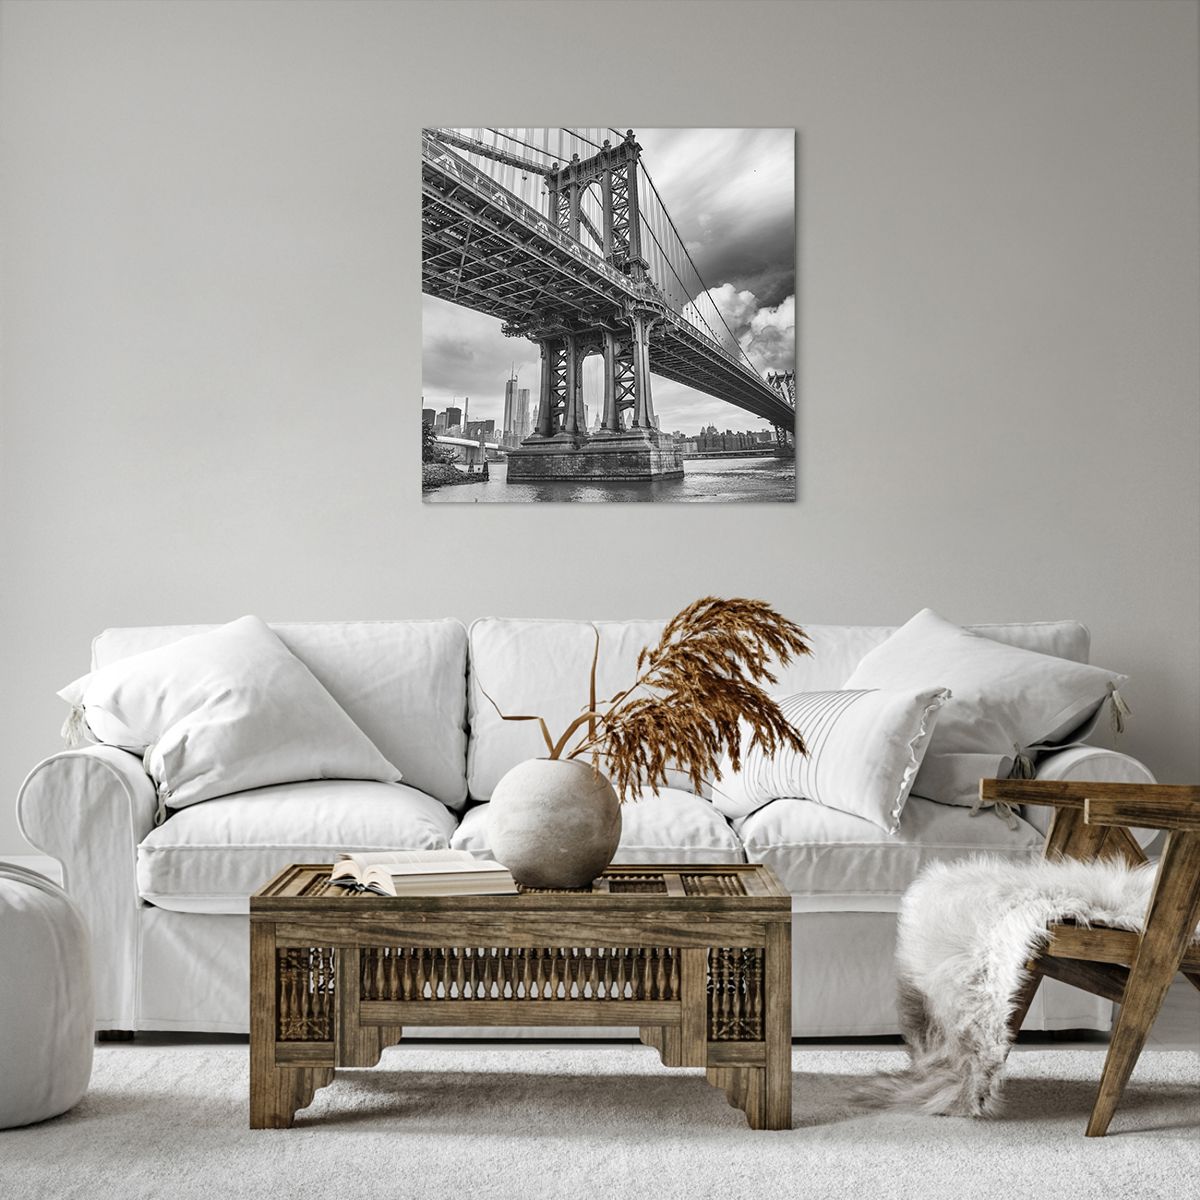 Obrazy na płótnie Nowy Jork, Obrazy na płótnie Miasto, Obrazy na płótnie Manhattan, Obrazy na płótnie Most Brookliński, Obrazy na płótnie Podróże